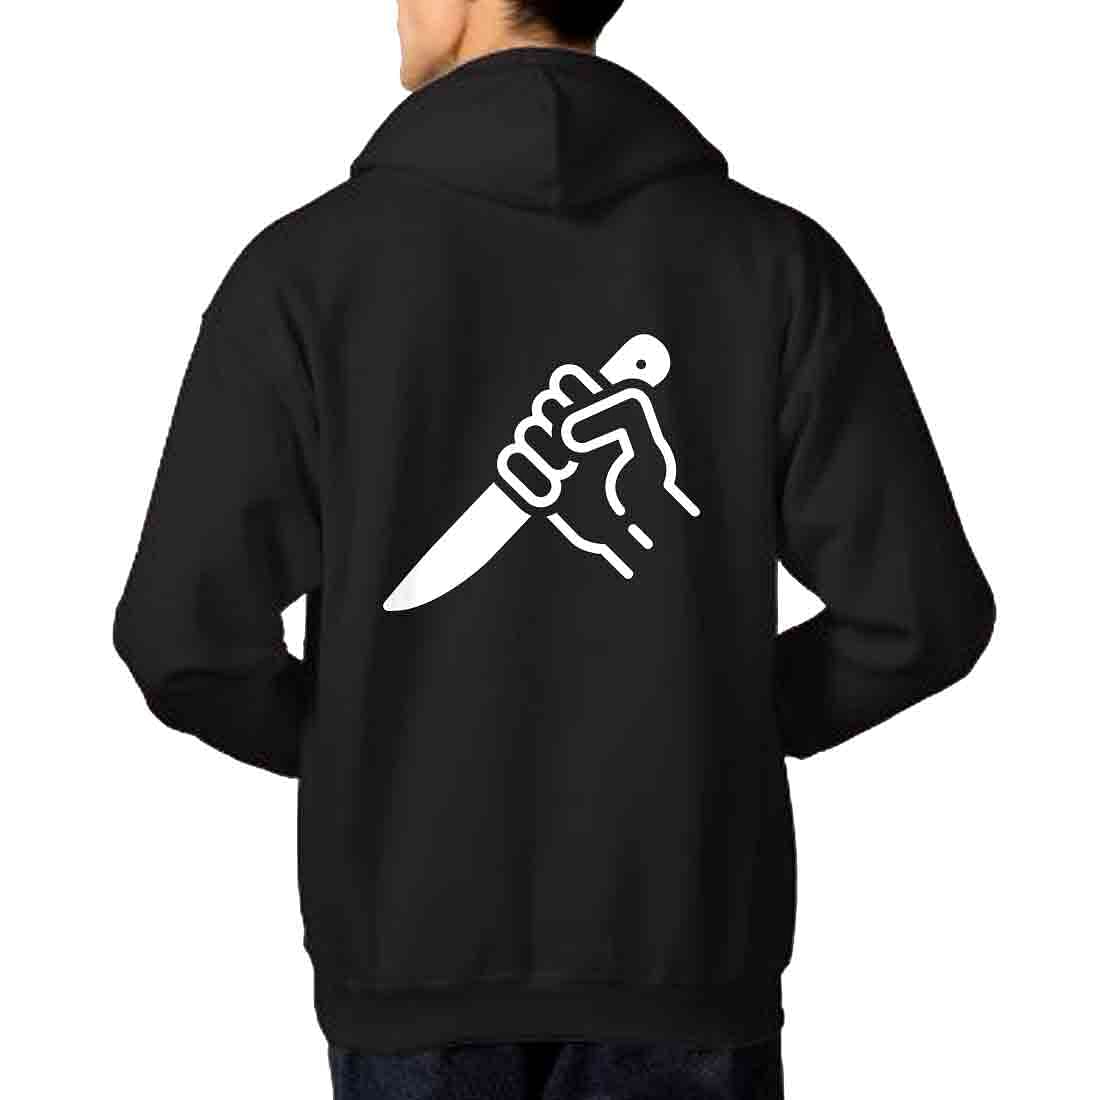 Nutcase Unisex Designer Black Hoodie Men Sweatshirt (Black) - Stab Nutcase